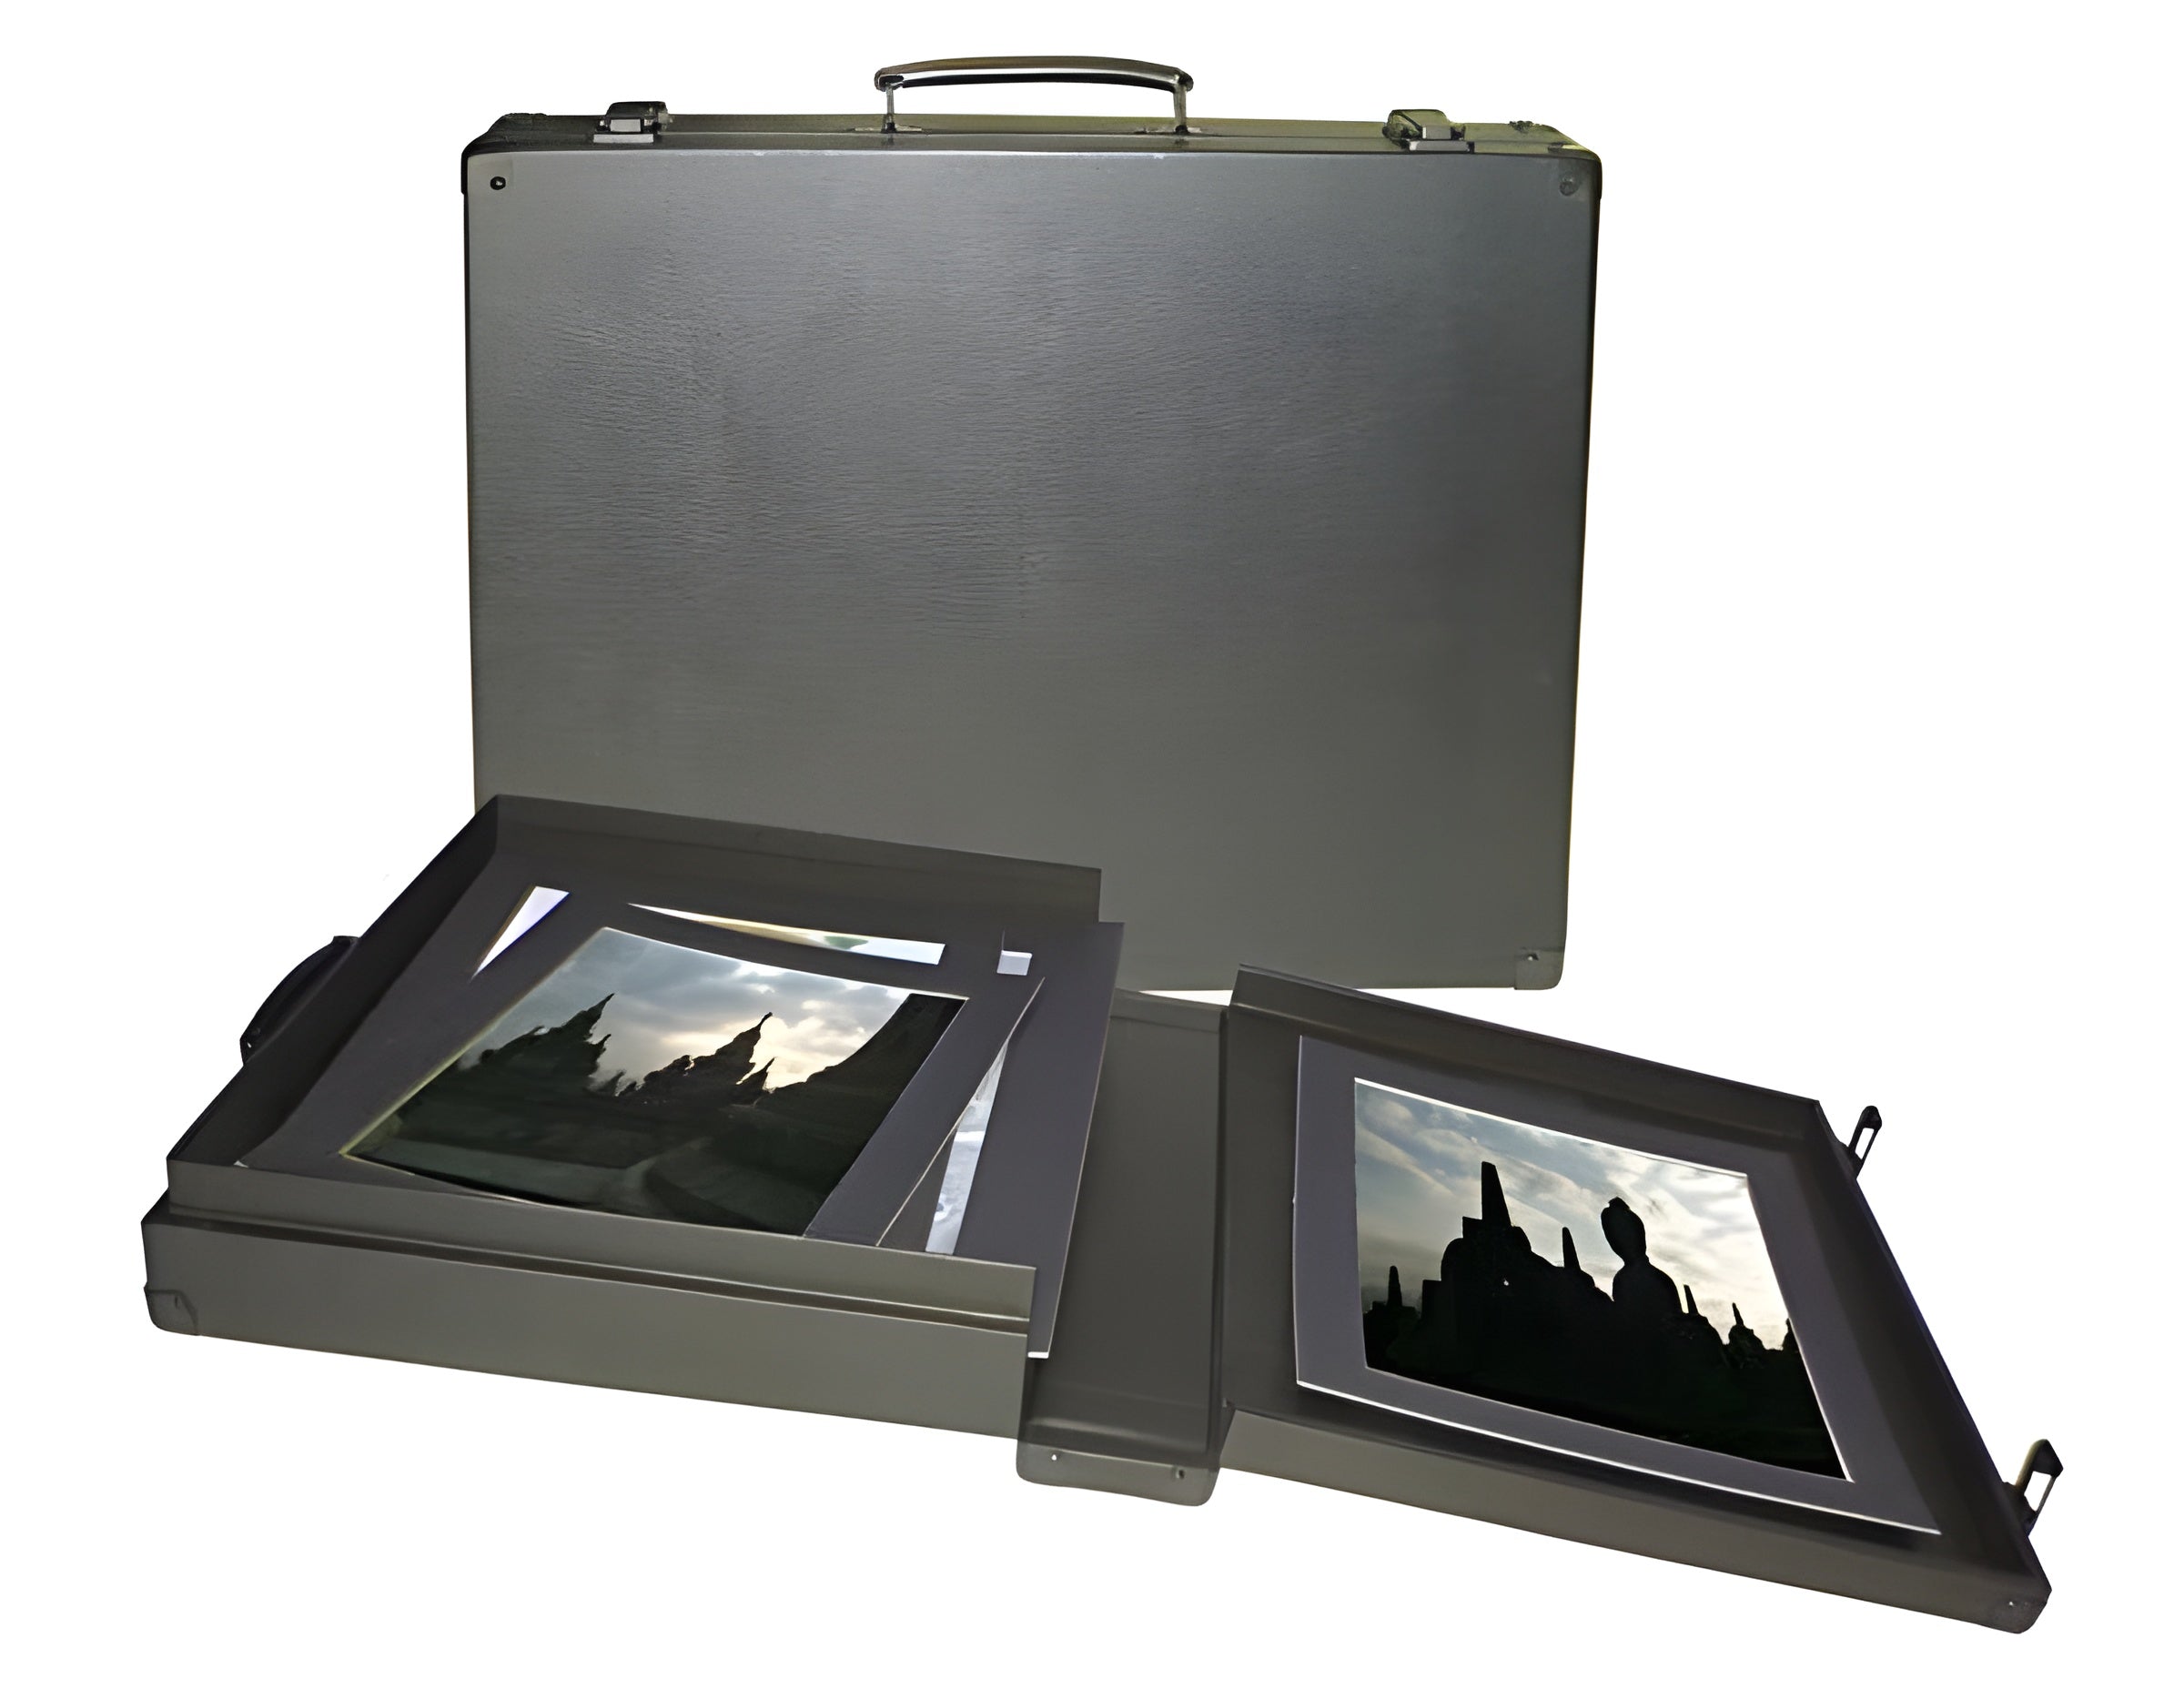 16x20x2.5 Hard Portfolio Case – Portfolios and Art Cases